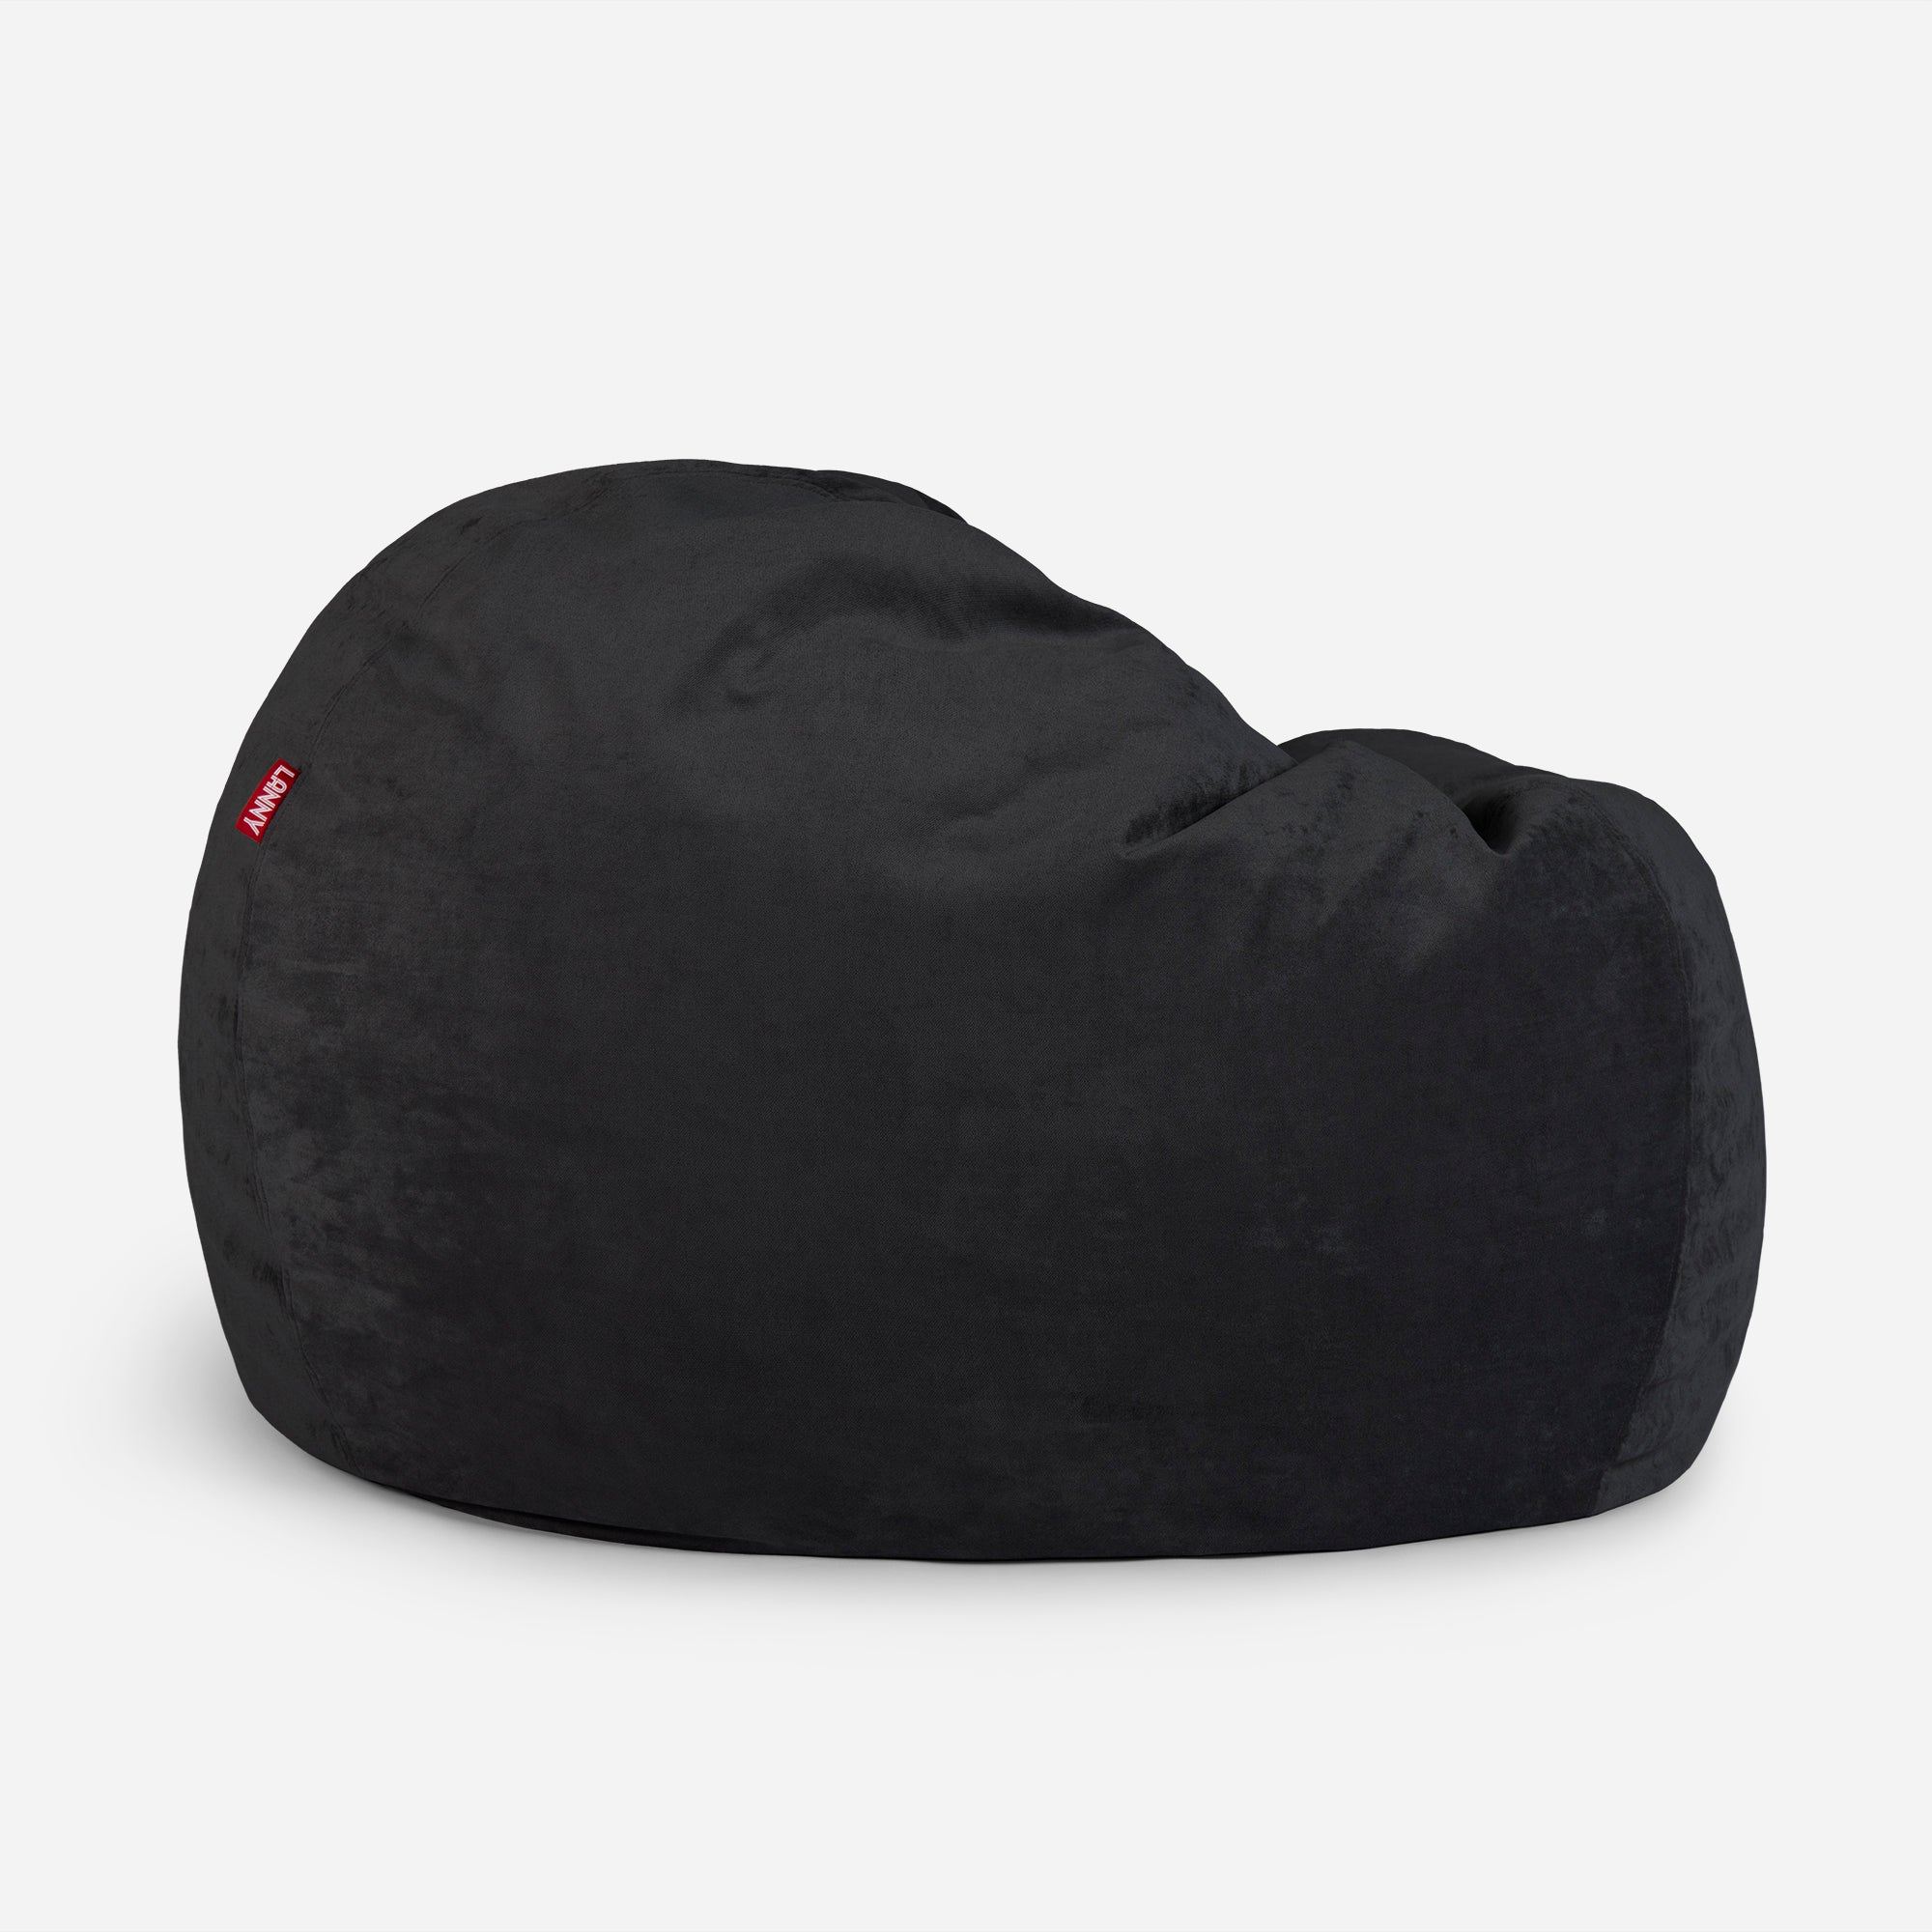 Sphere Aldo Black Bean bag